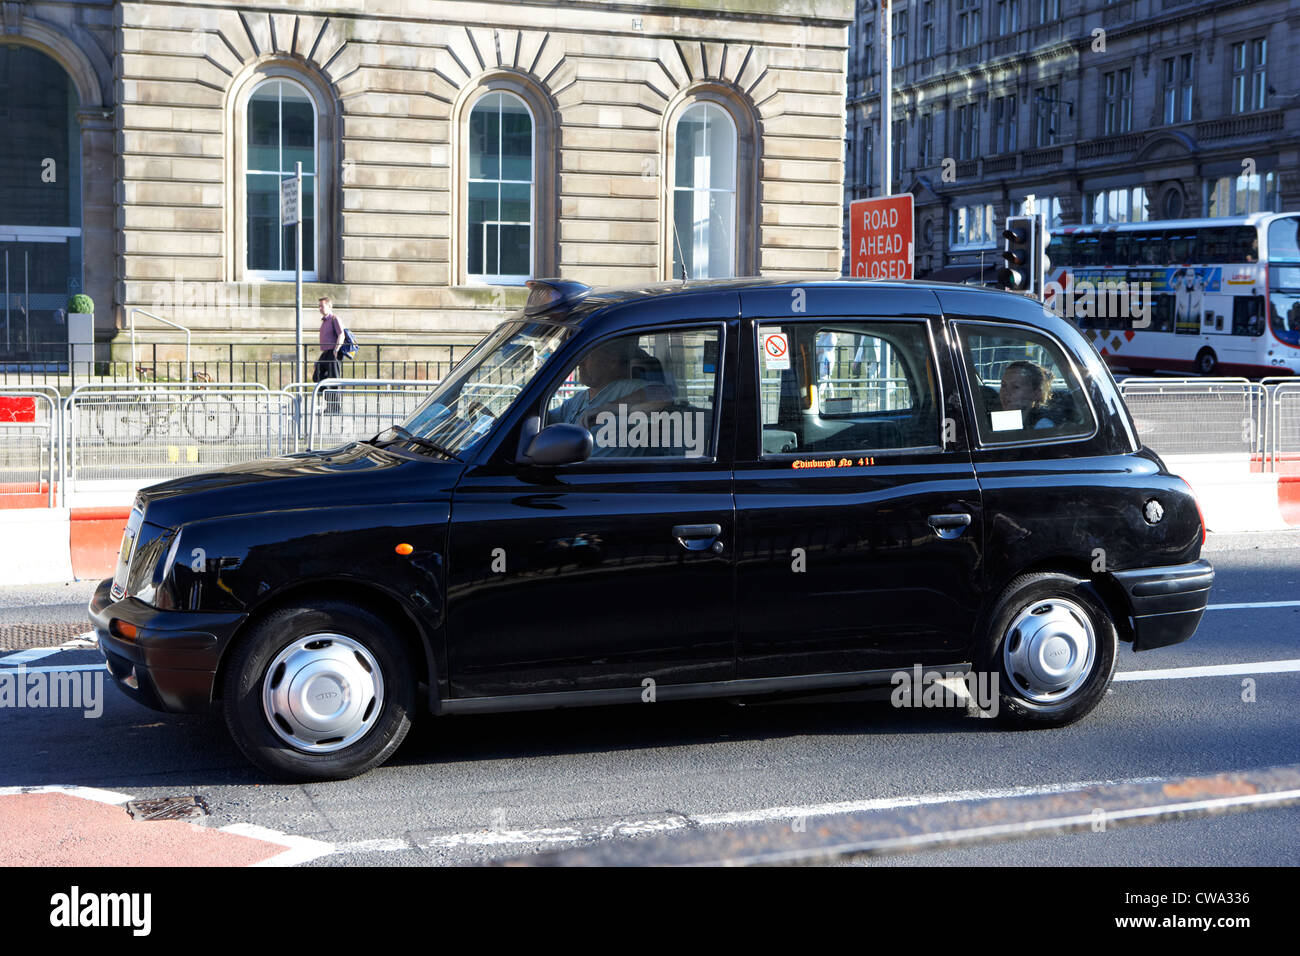 Black location privée Édimbourg en Écosse taxi uk Royaume-Uni Banque D'Images